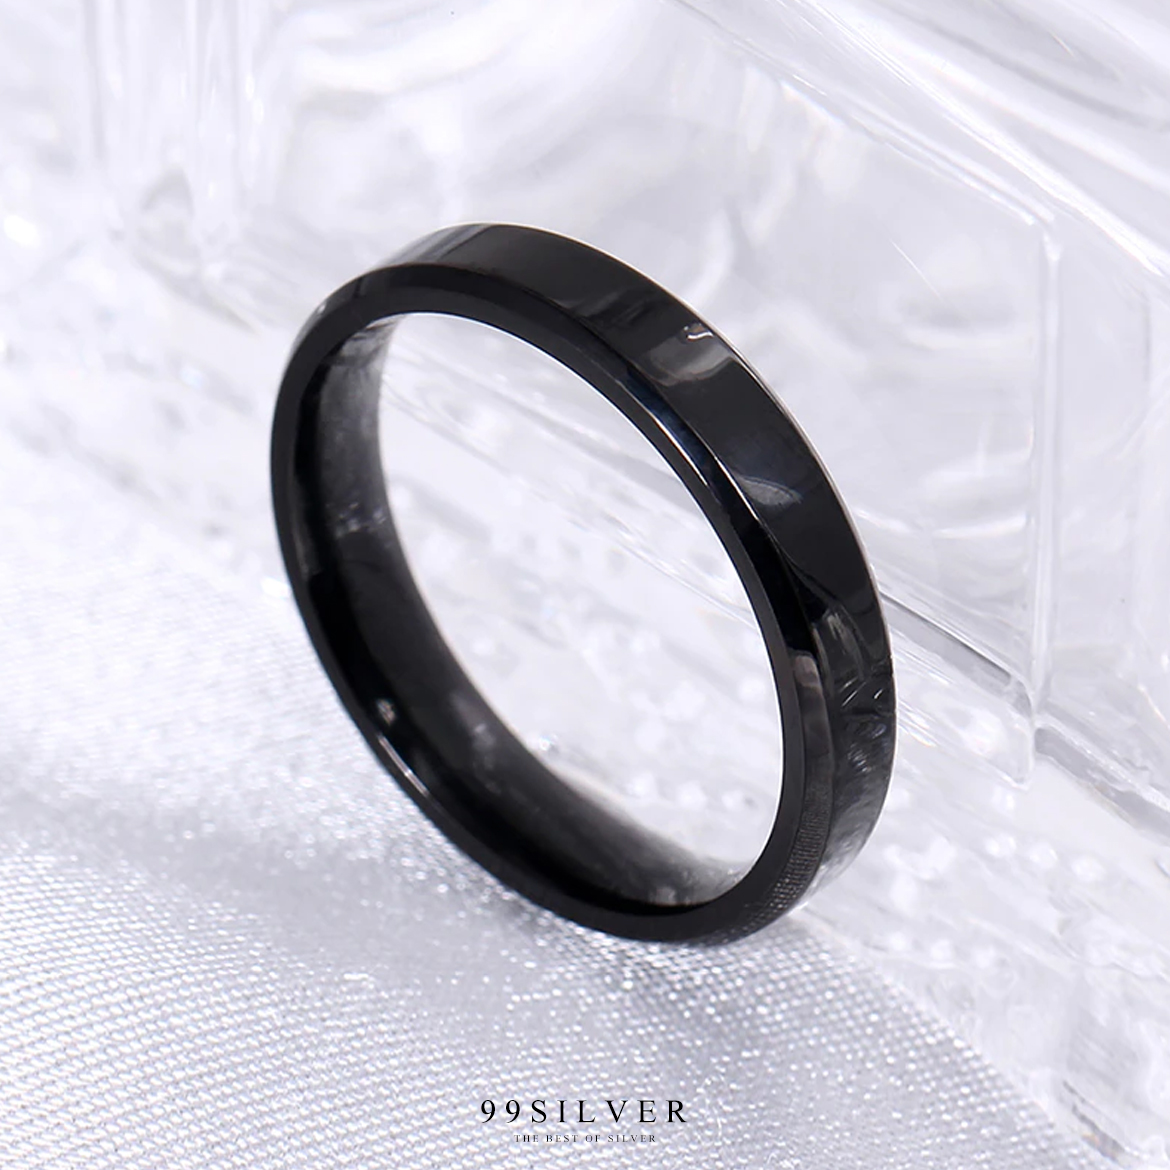 แหวนสแตนเลสแบล๊คไทเทเนี่ยมแท้หน้ากว้าง 4 มิล ขอบมุมตัดสวยงาม ตัวเรือนดำเงา